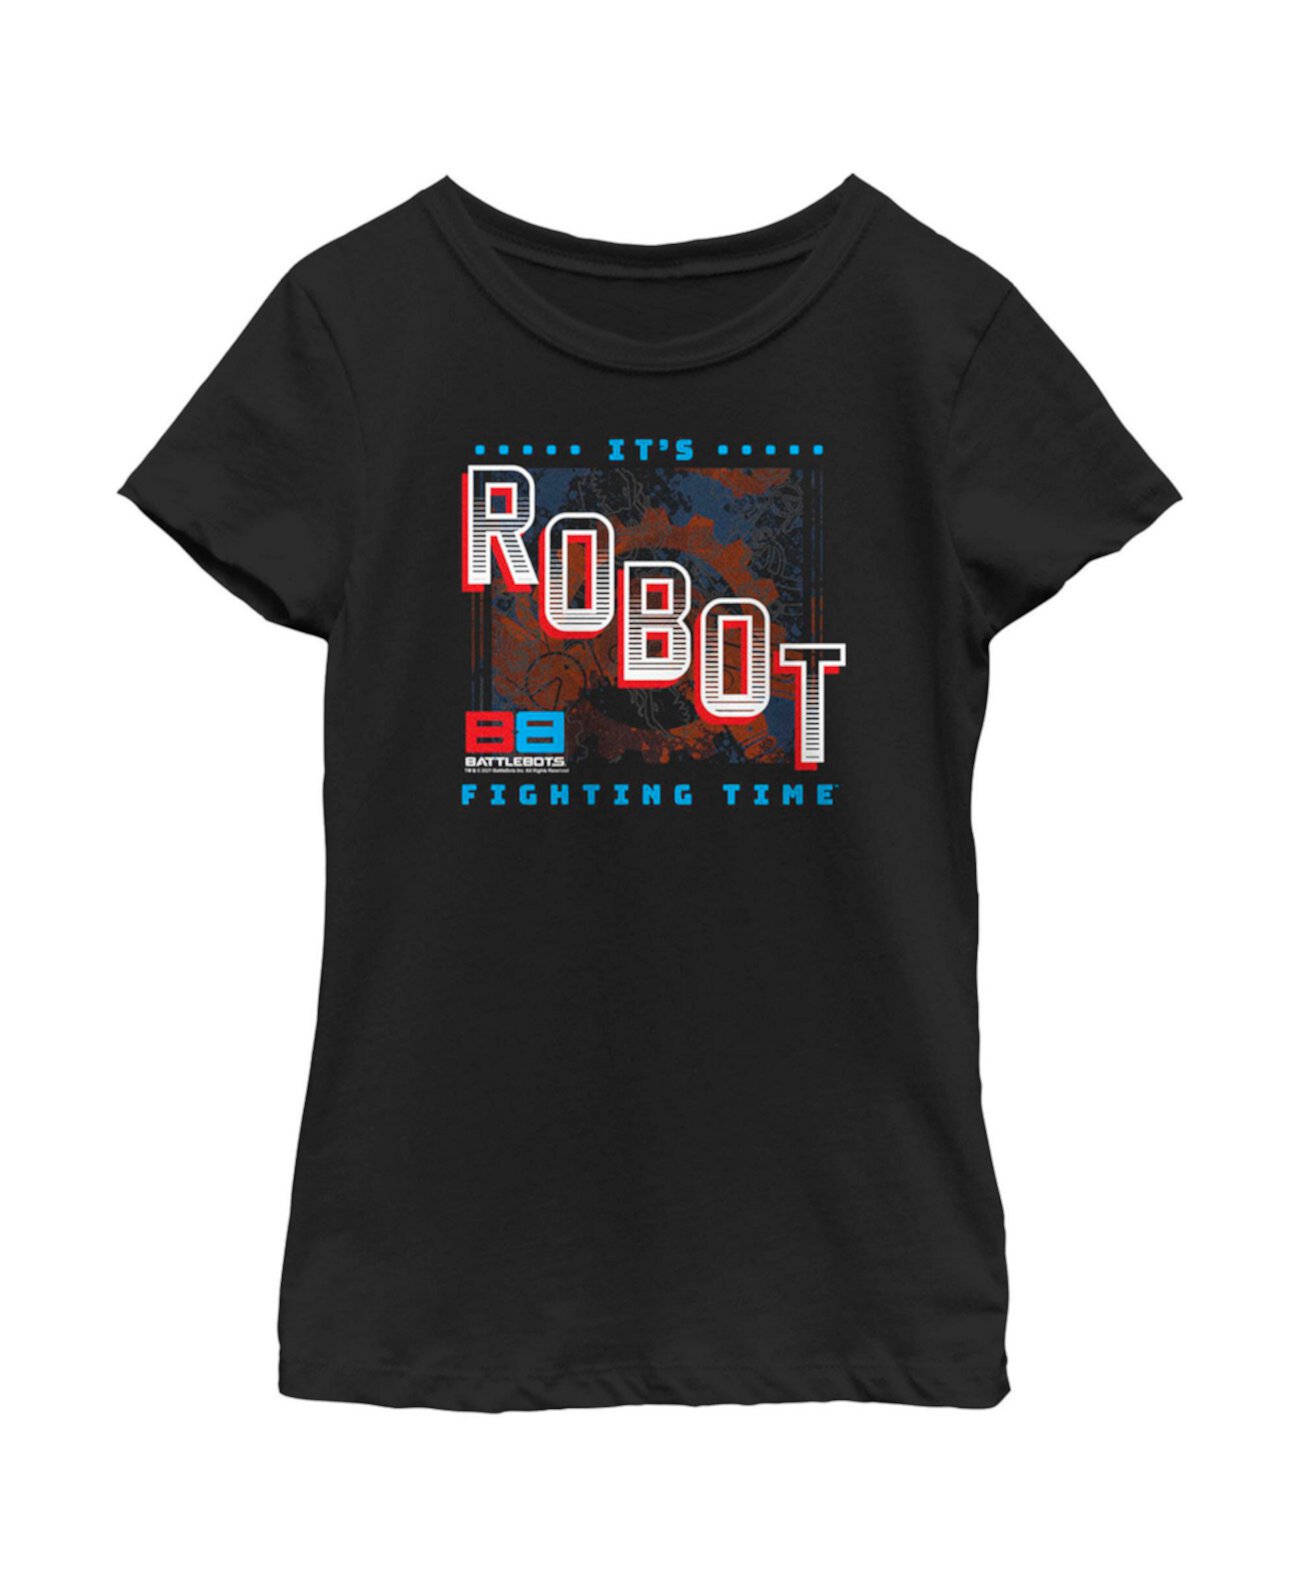 Детская футболка It's Robot Fighting Time для девочек Battlebots